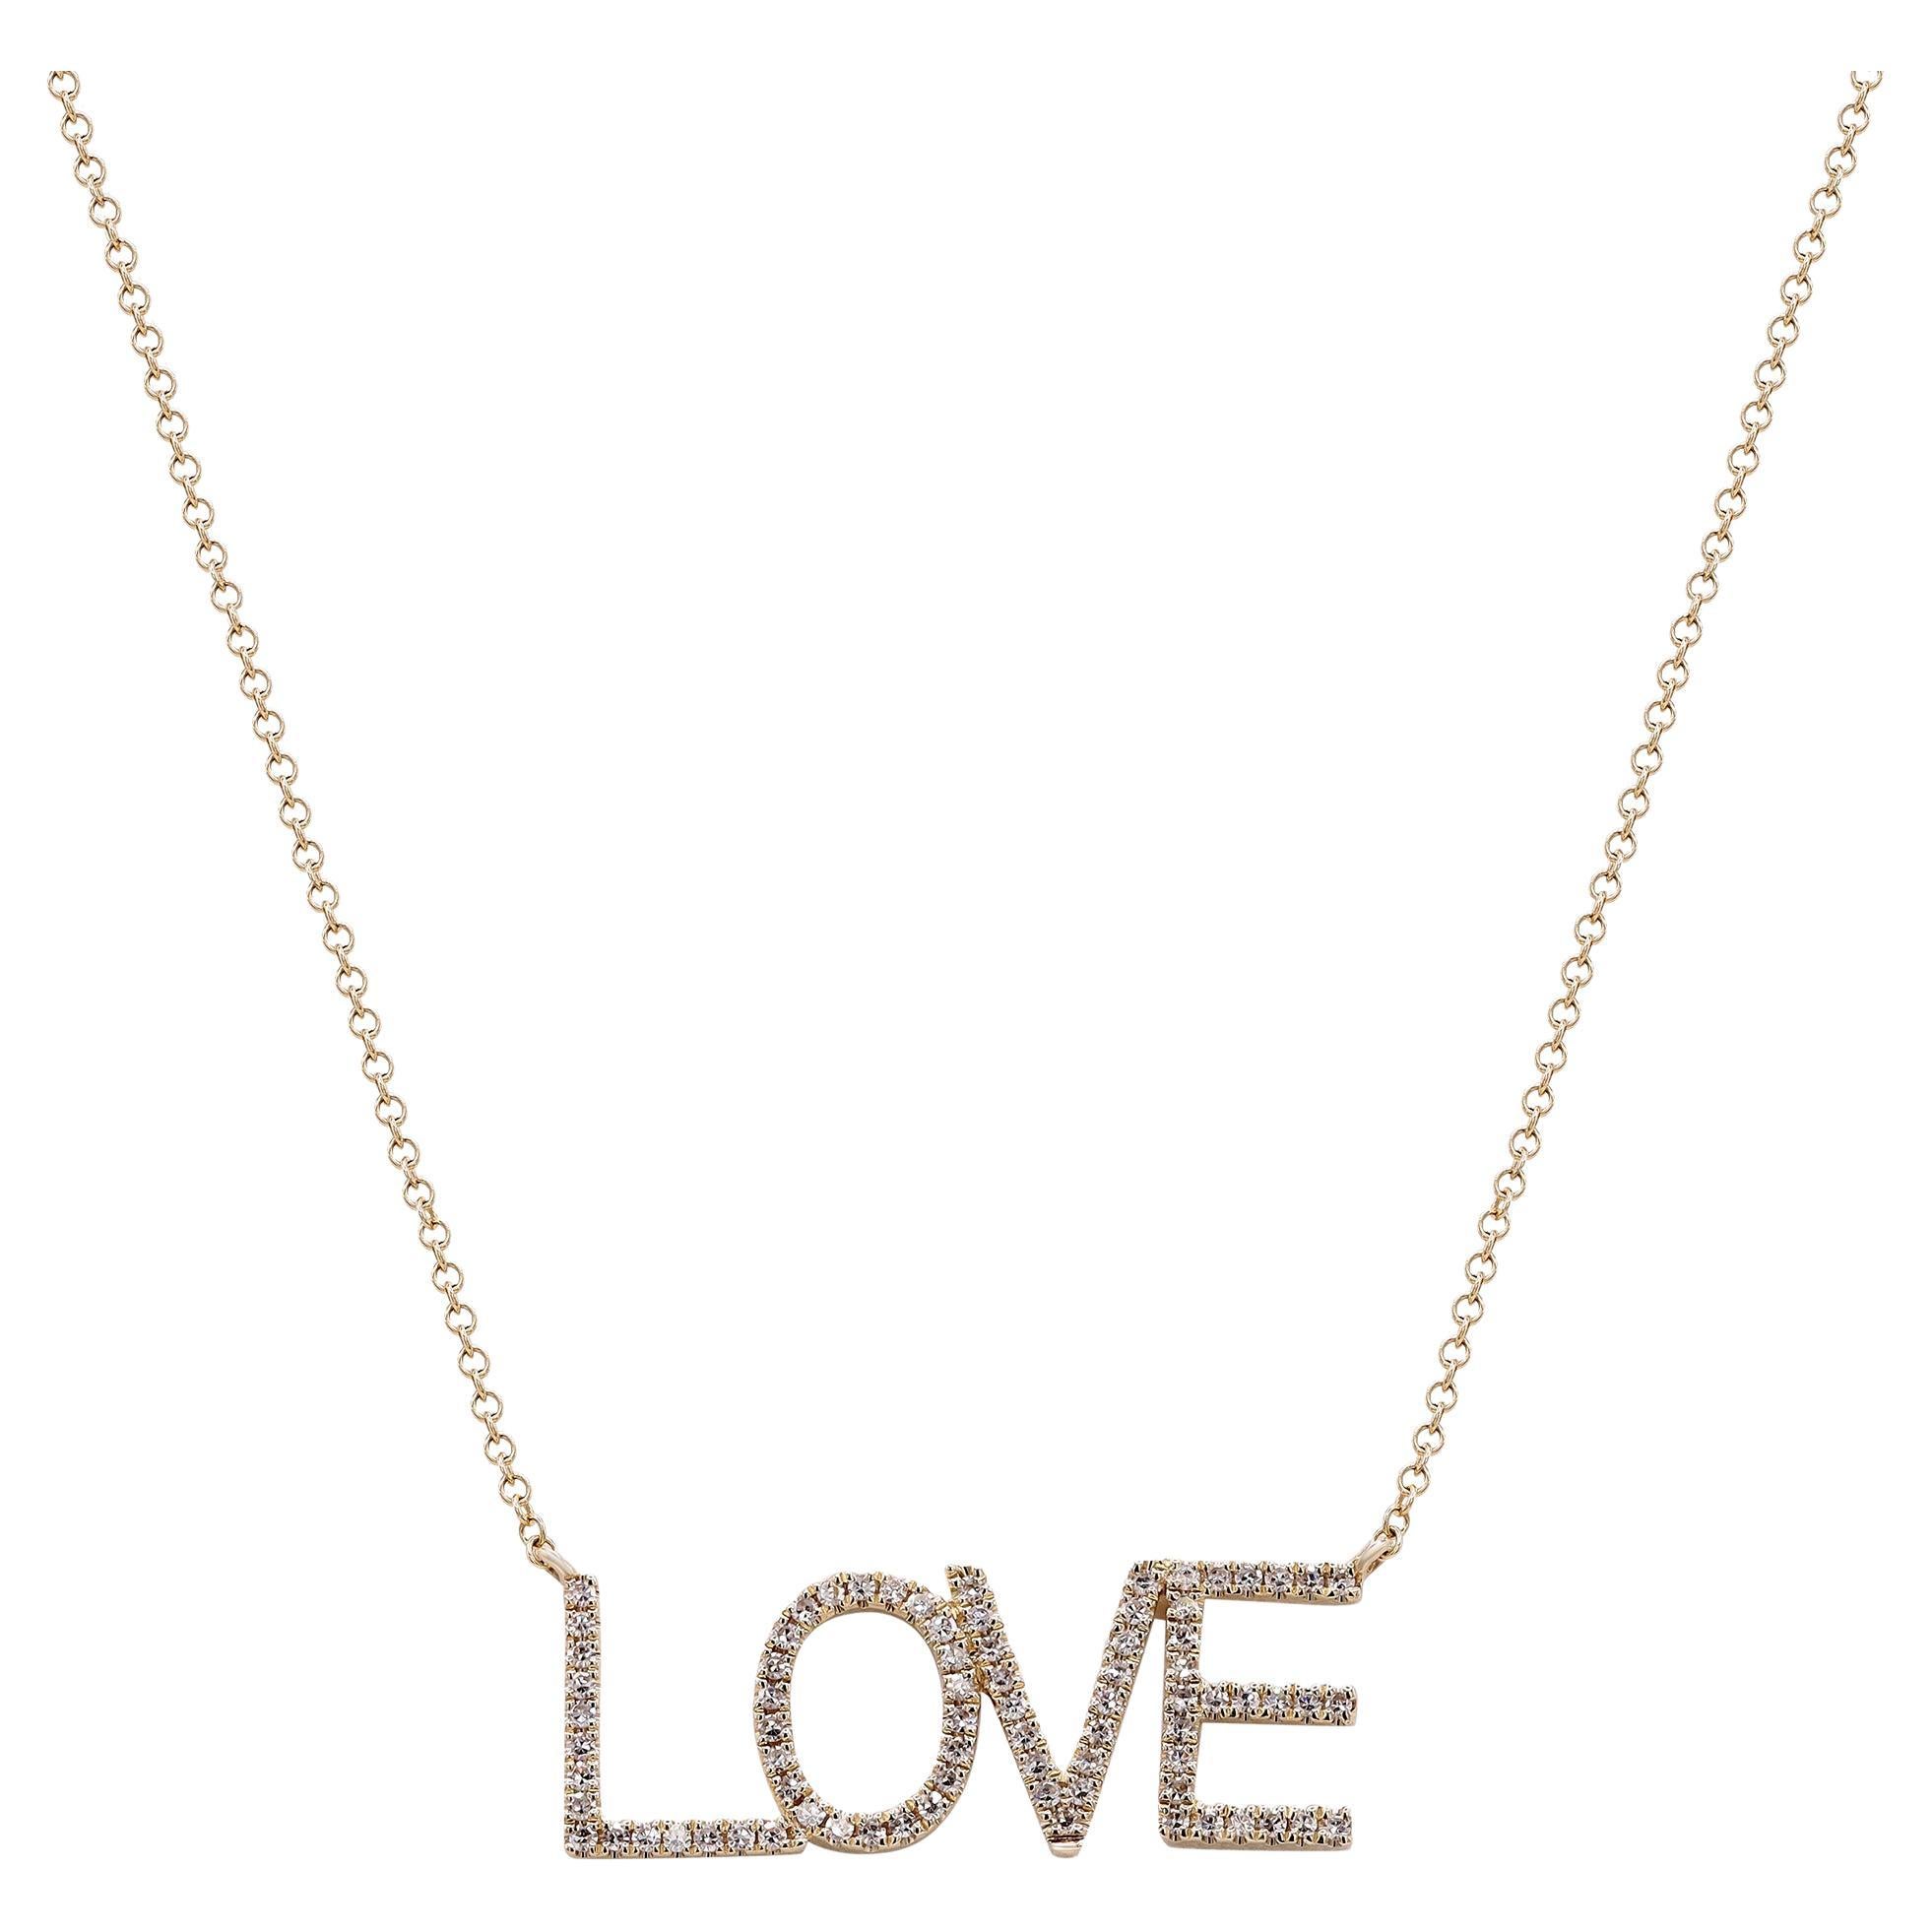 Rachel Koen Diamond Love Necklace 14K Yellow Gold 0.21Cttw For Sale